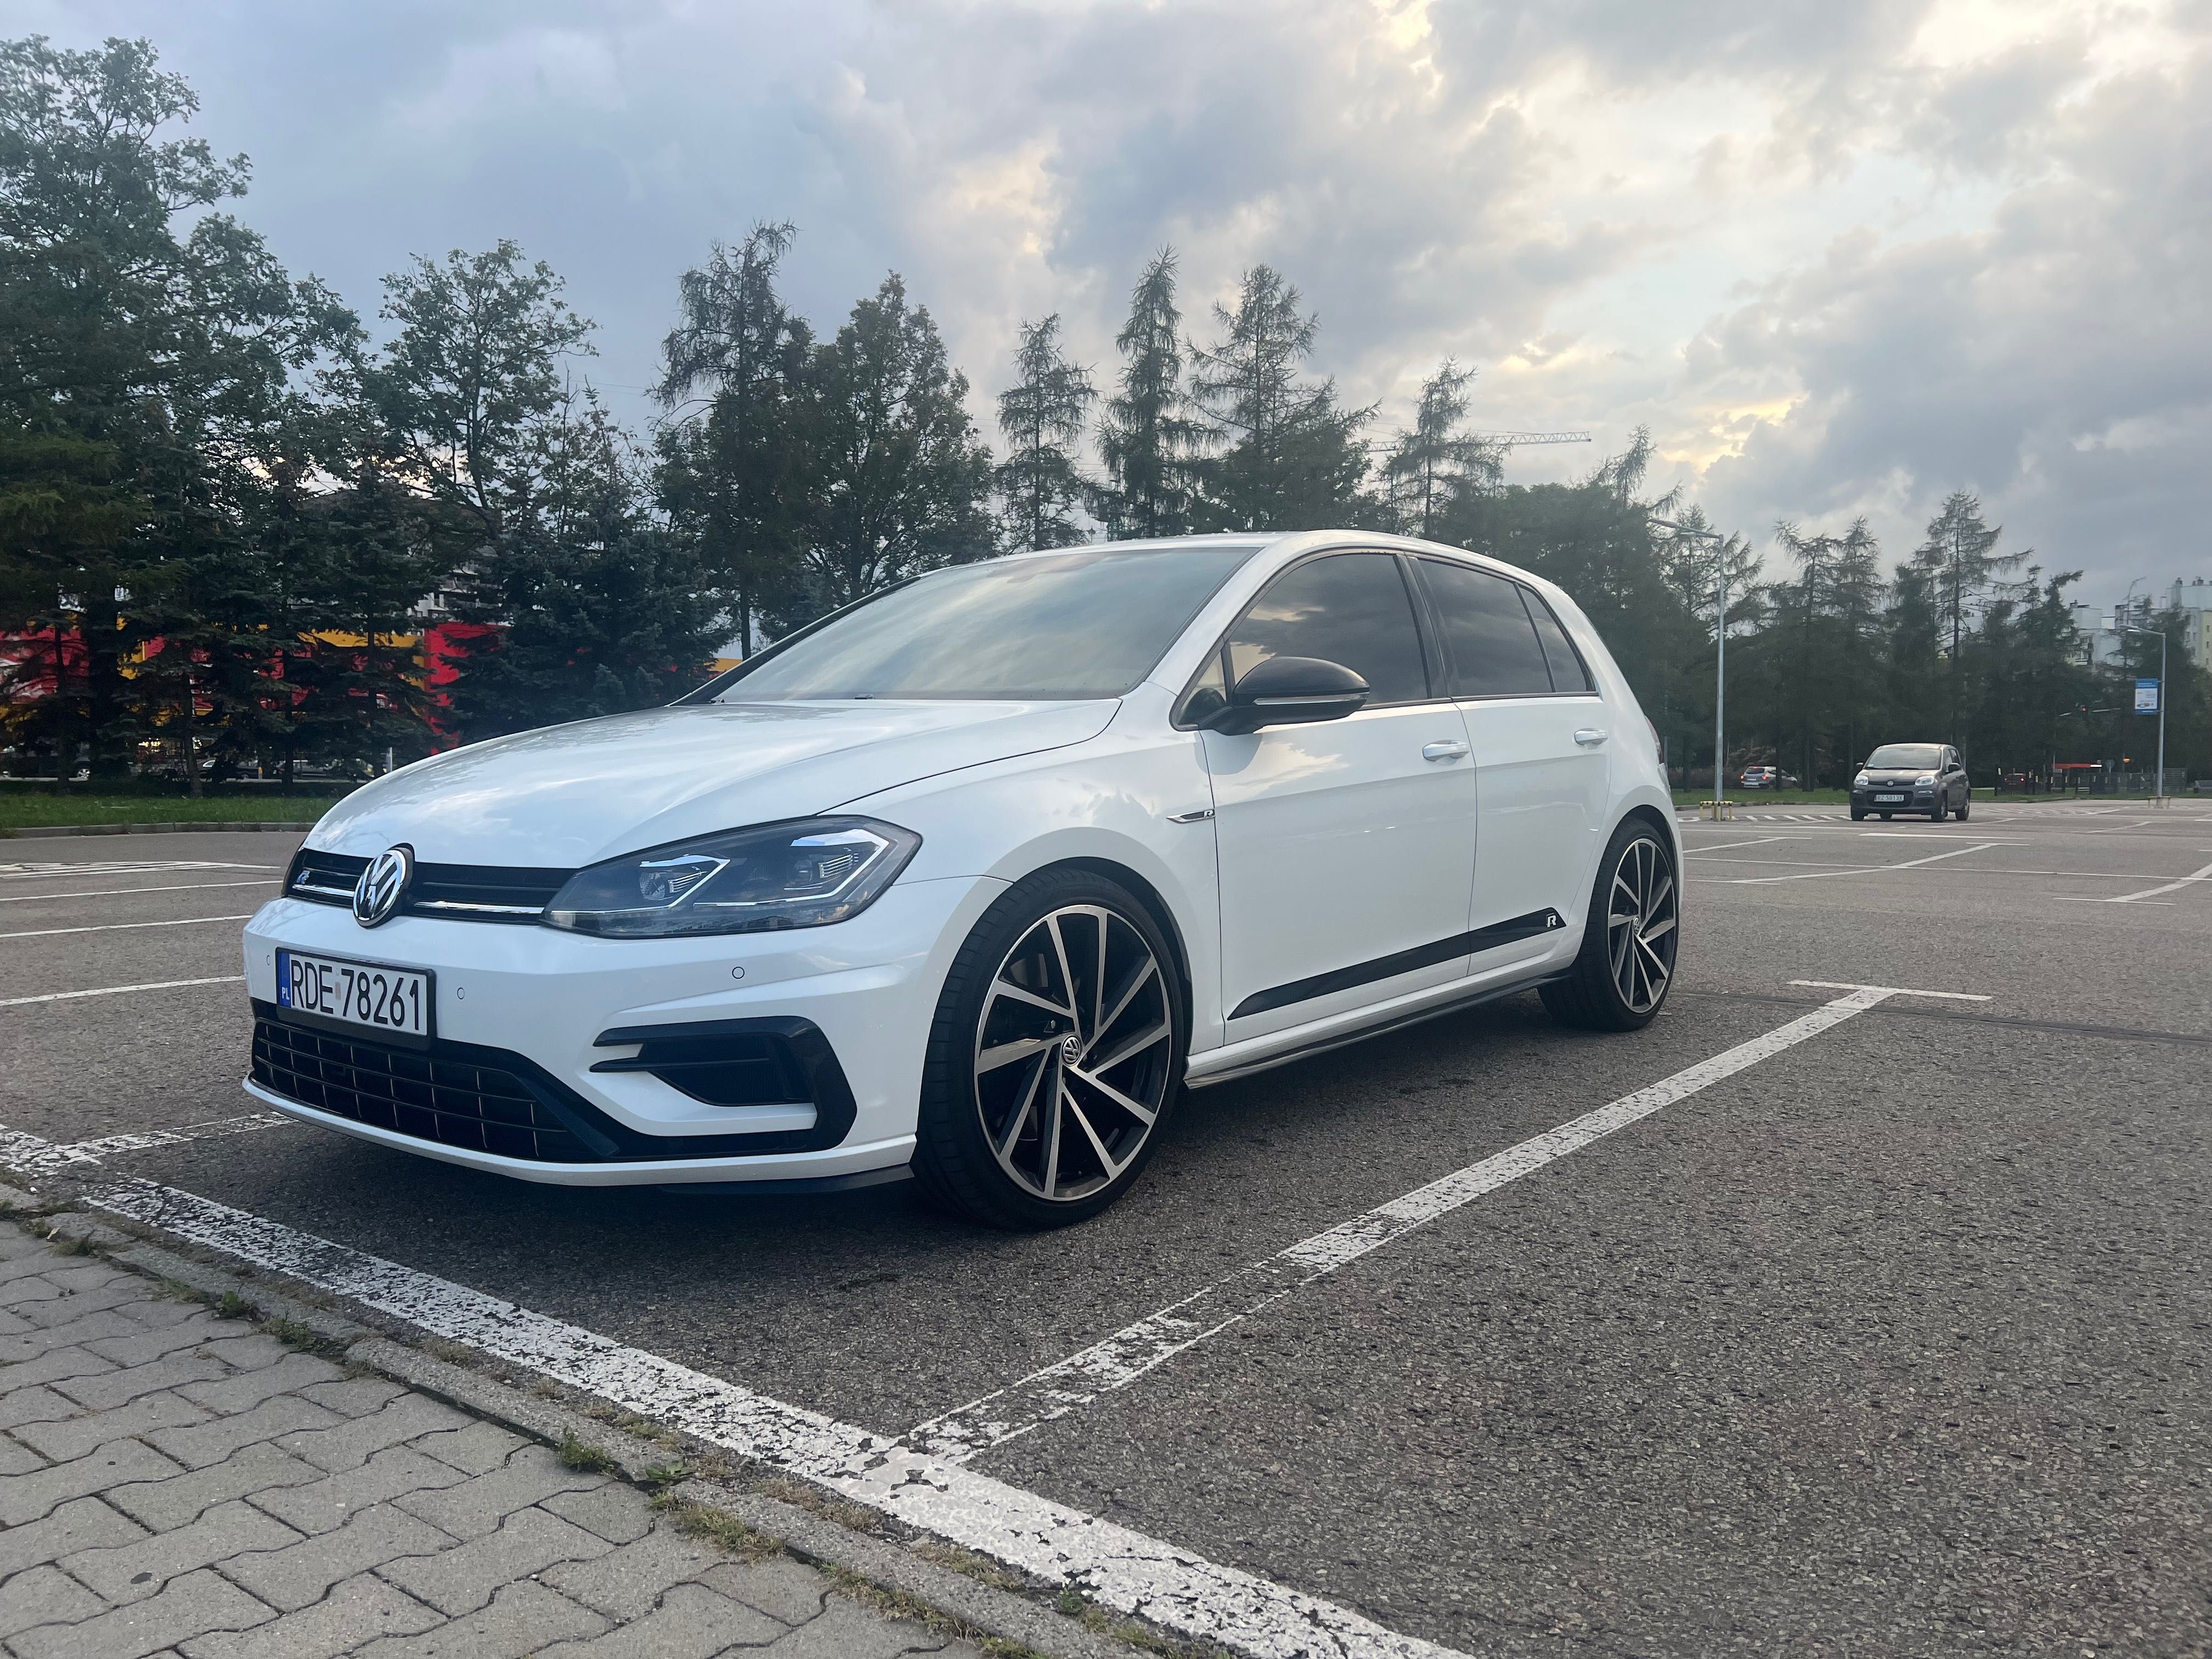 Volkswagen Golf 7.5 R 4 motion 2018